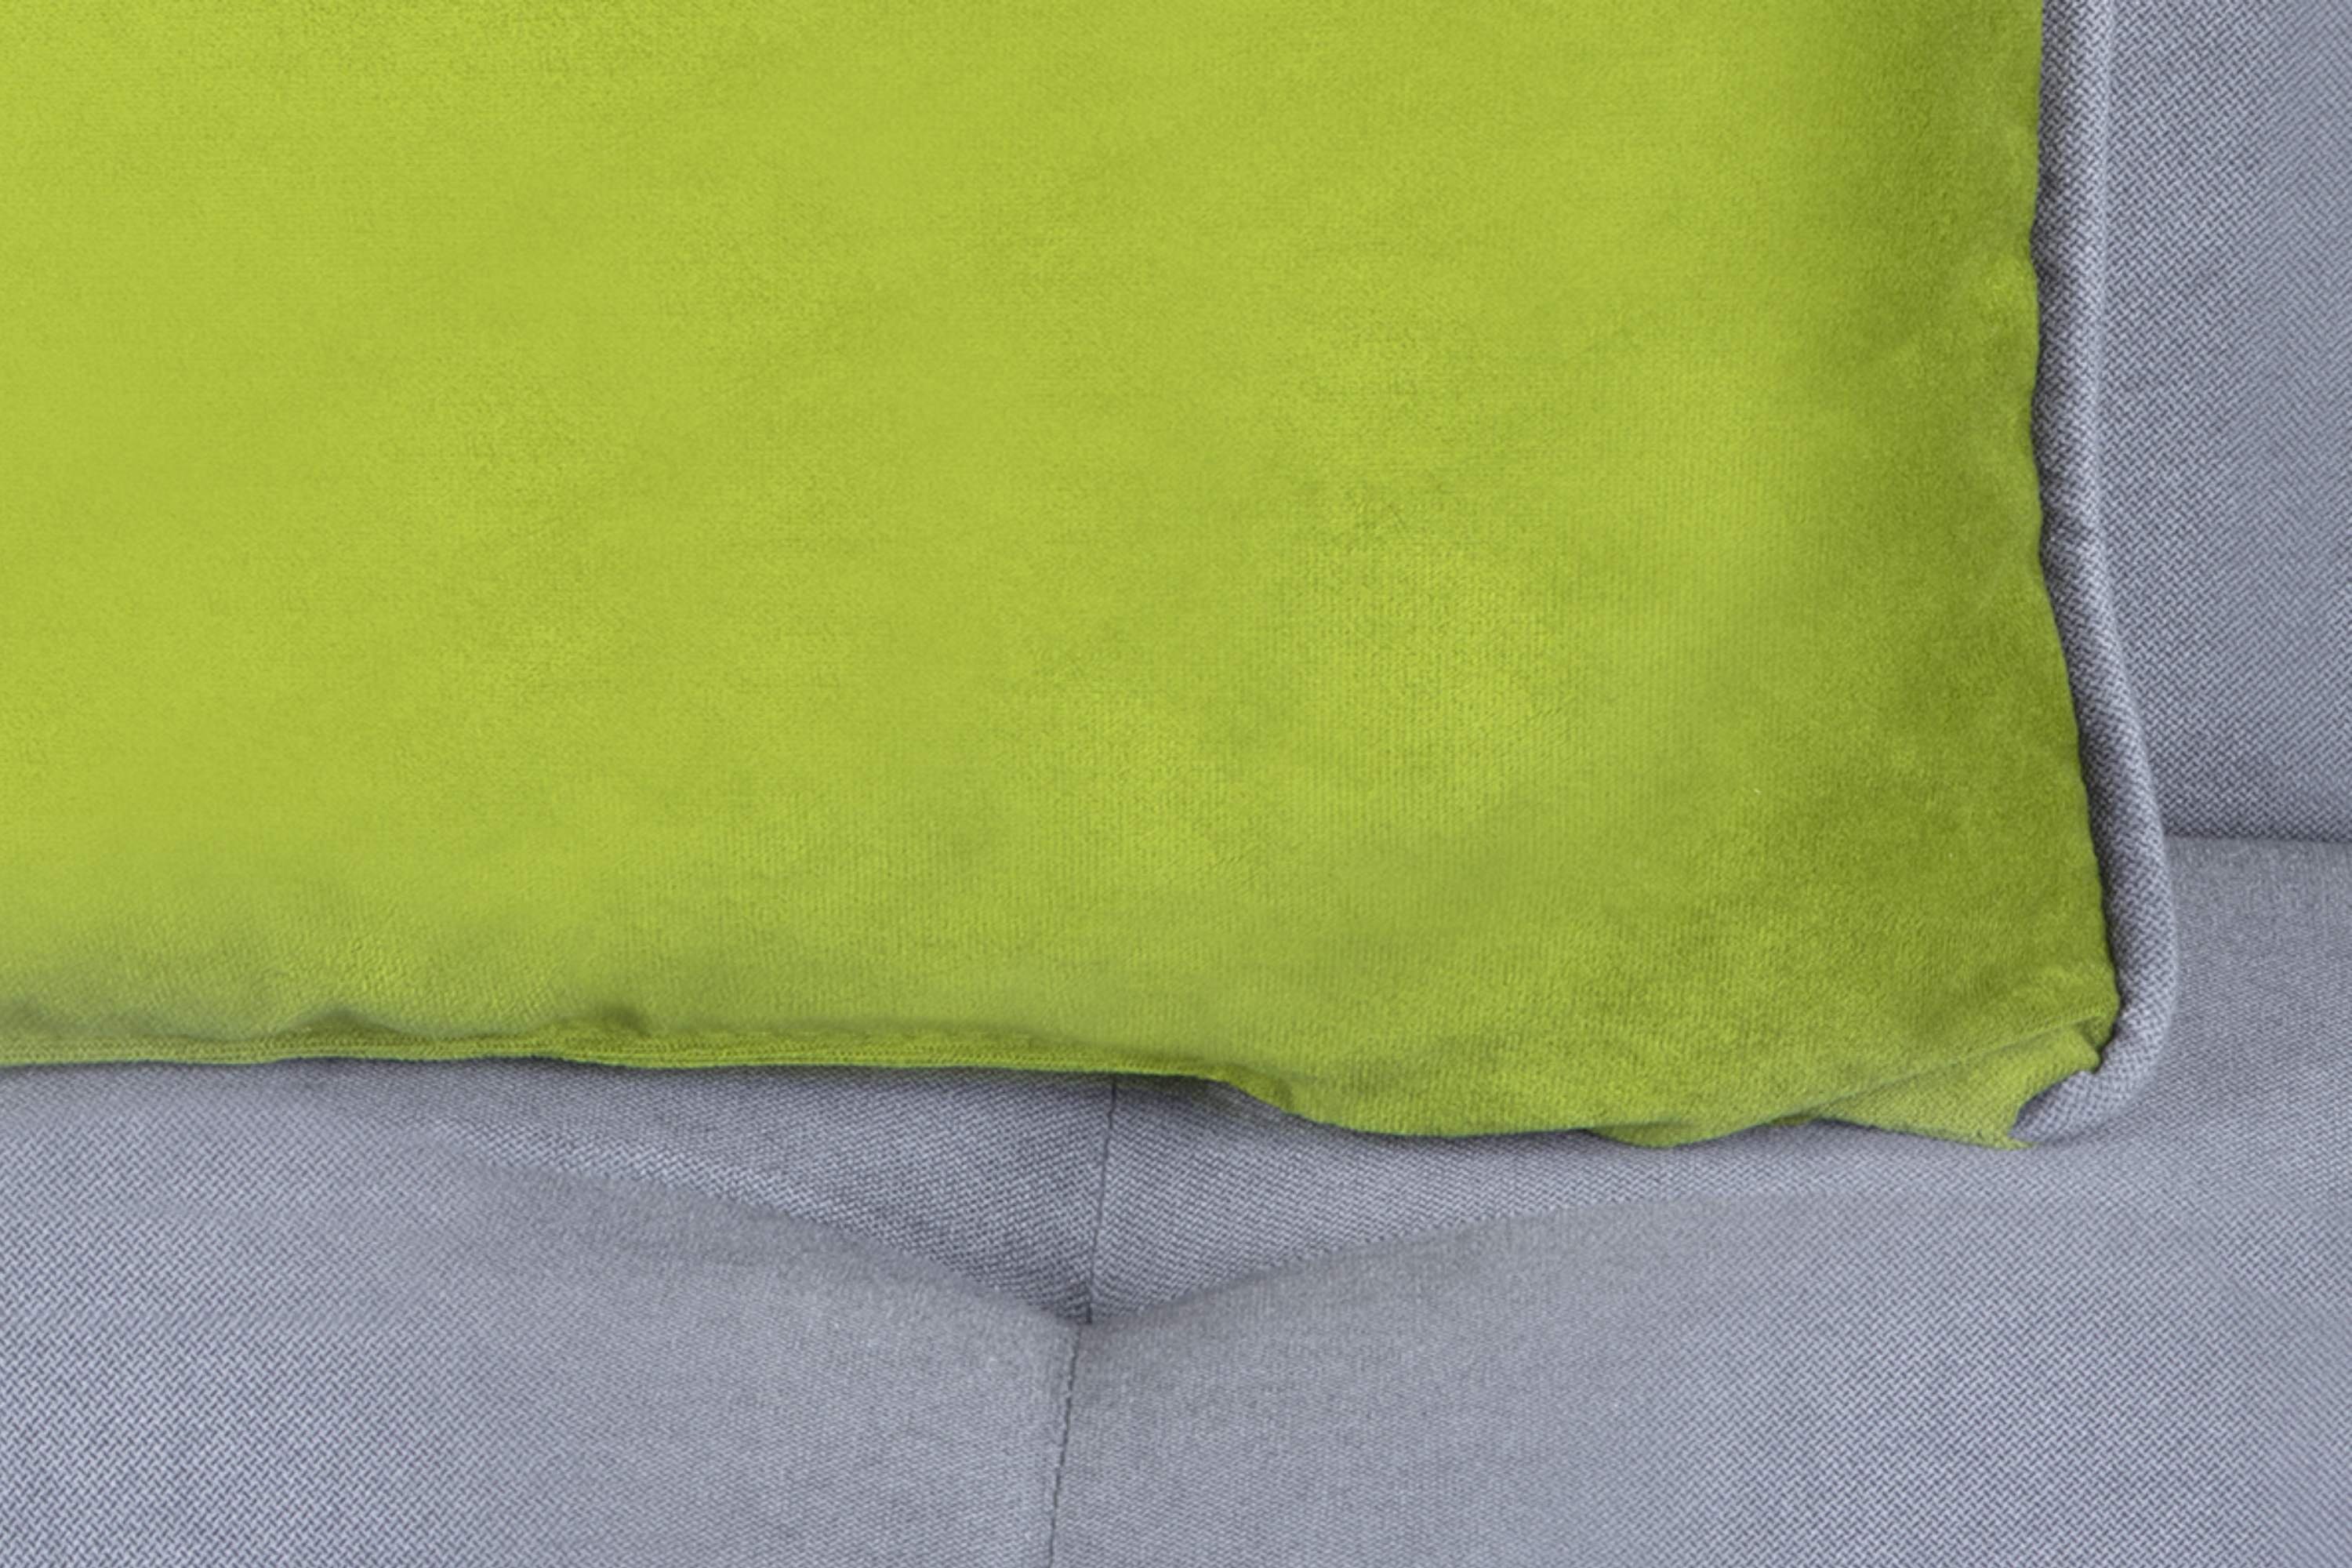 mit grau Personen, Liegefläche: 3 / 197x120cm, grün grau Velours, Schlafsofa ausziehbare Konsimo DOZER Sofa Wellenunterfederung |